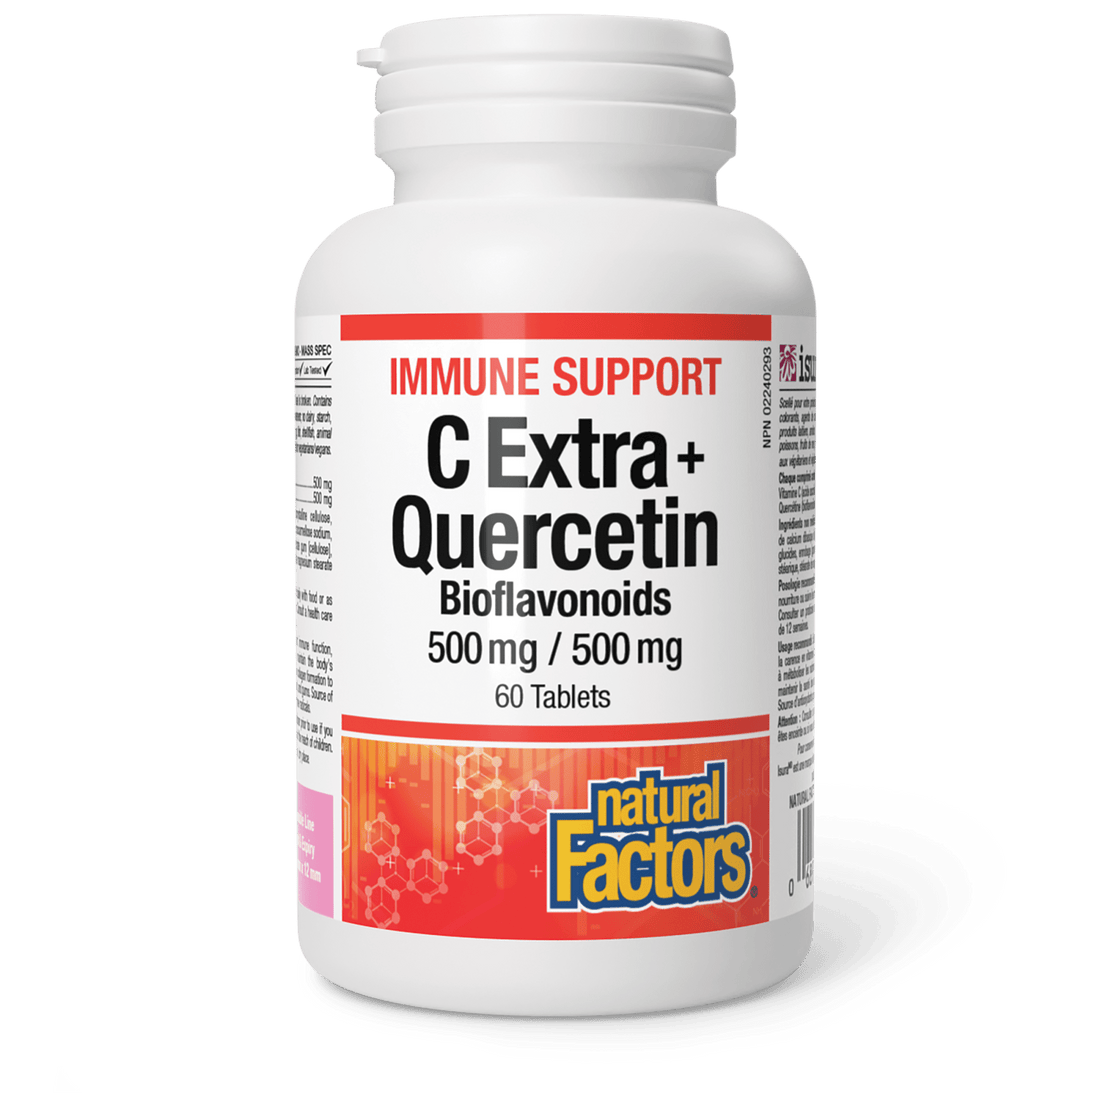 Natural Factors C Extra + Quercetin 500mg/500mg (60 Tablets)